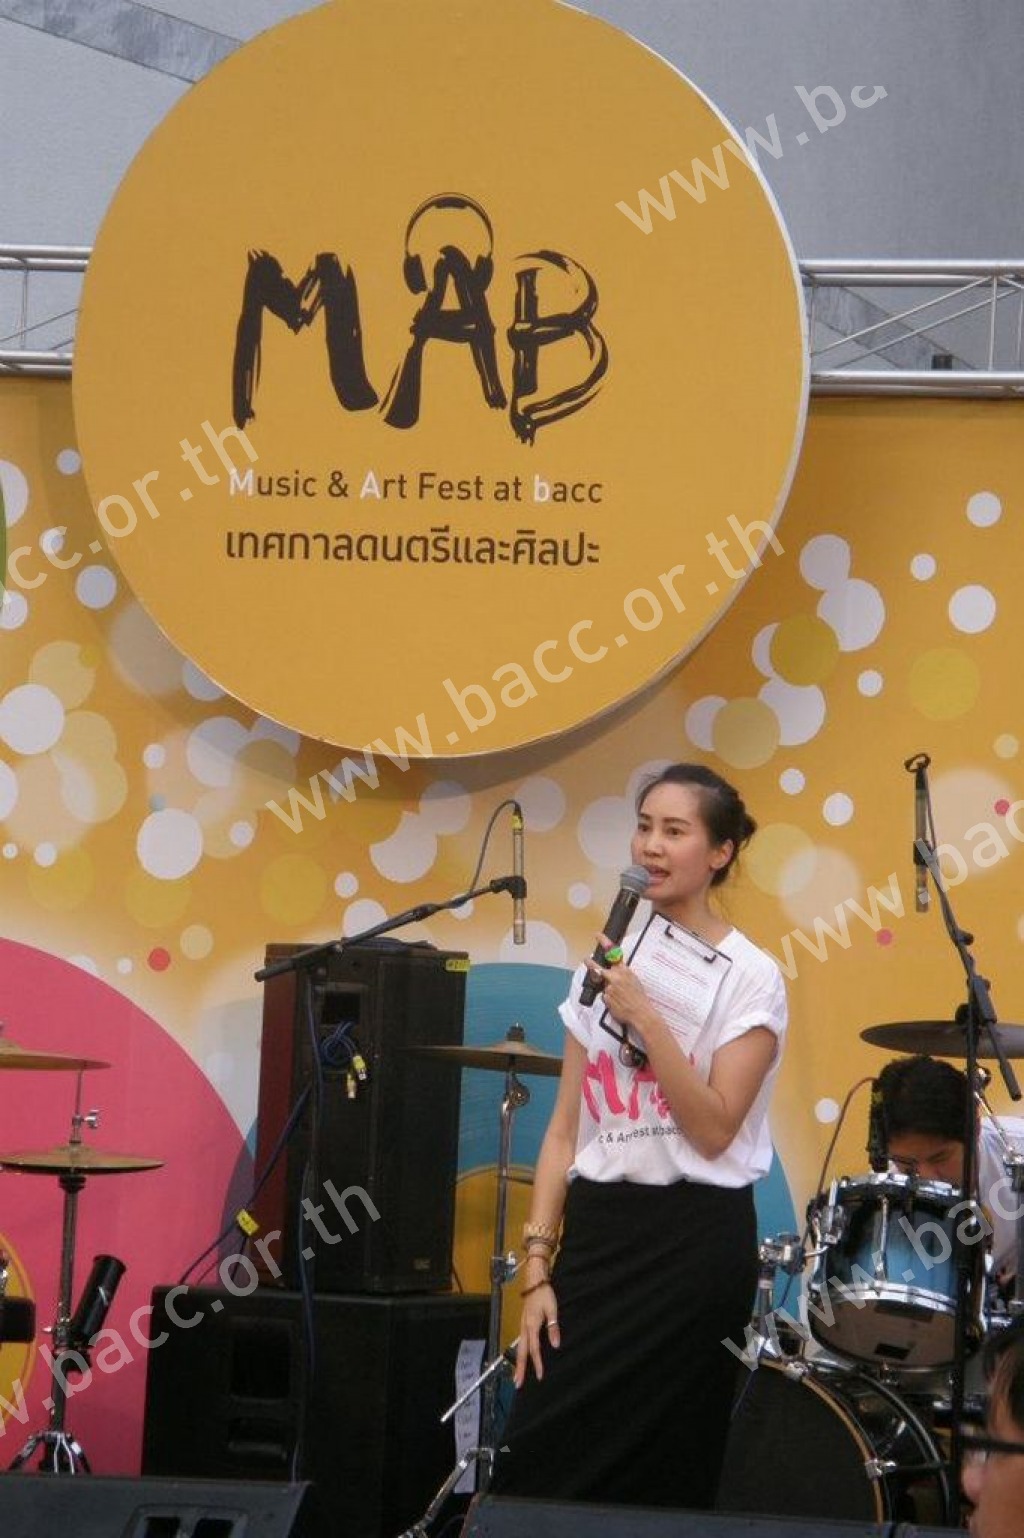 โครงการเทศกาลดนตรี Music & Art Fest at bacc 2012 : MAB ครั้งที่ 1